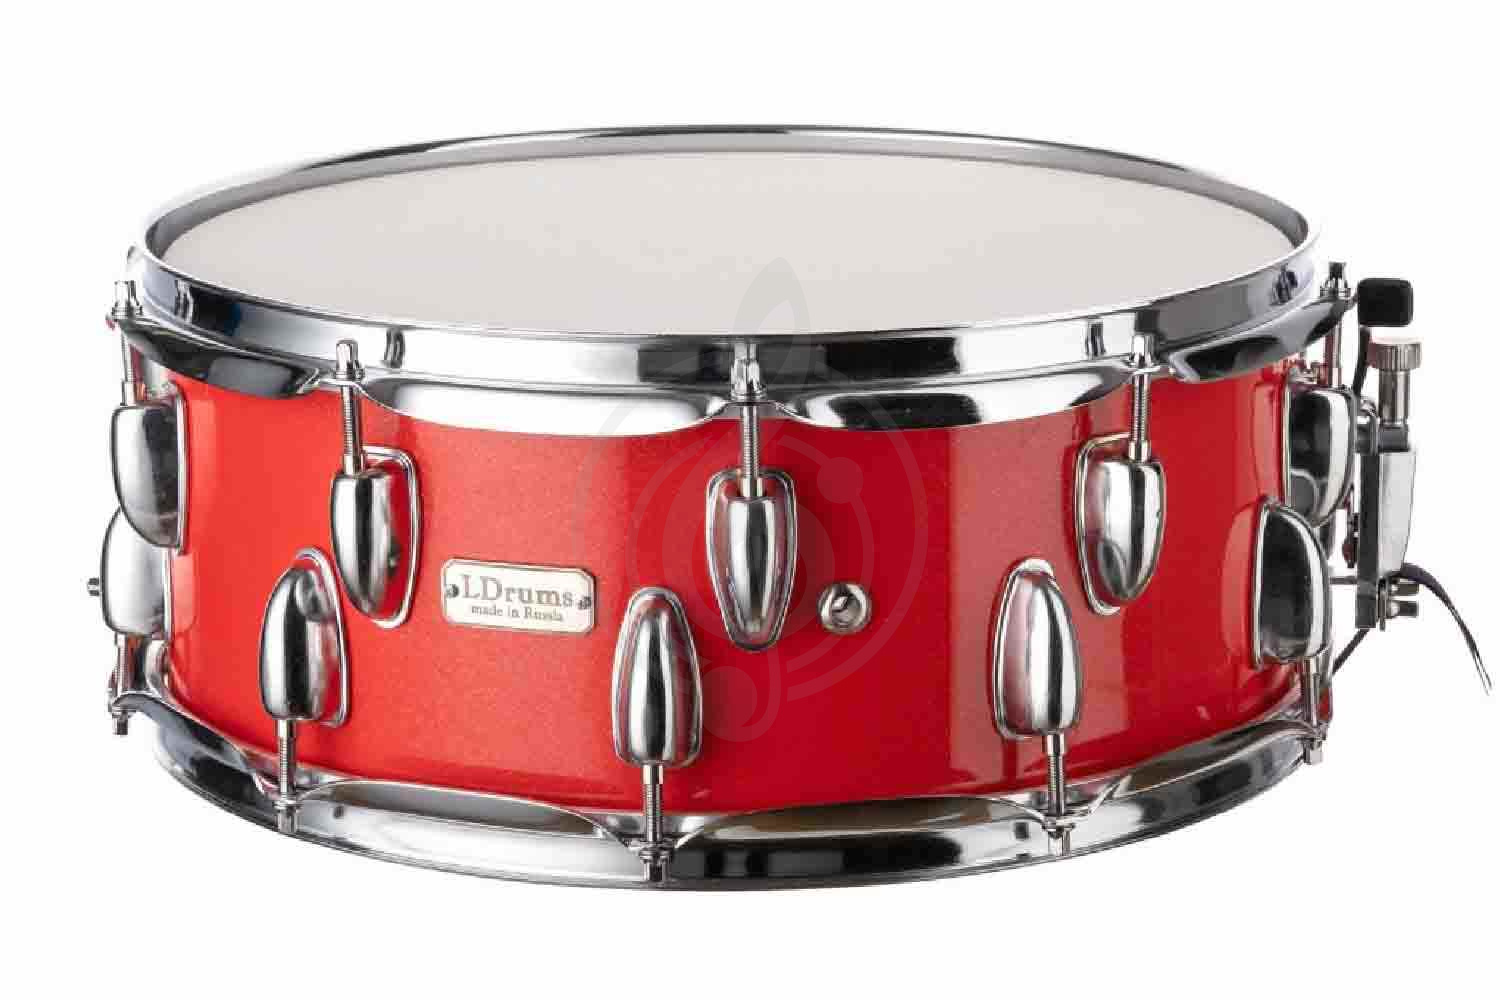 Малый барабан LDrum LD5408SN - Малый барабан, красный,14"х5,5", LDrums LD5408SN в магазине DominantaMusic - фото 1